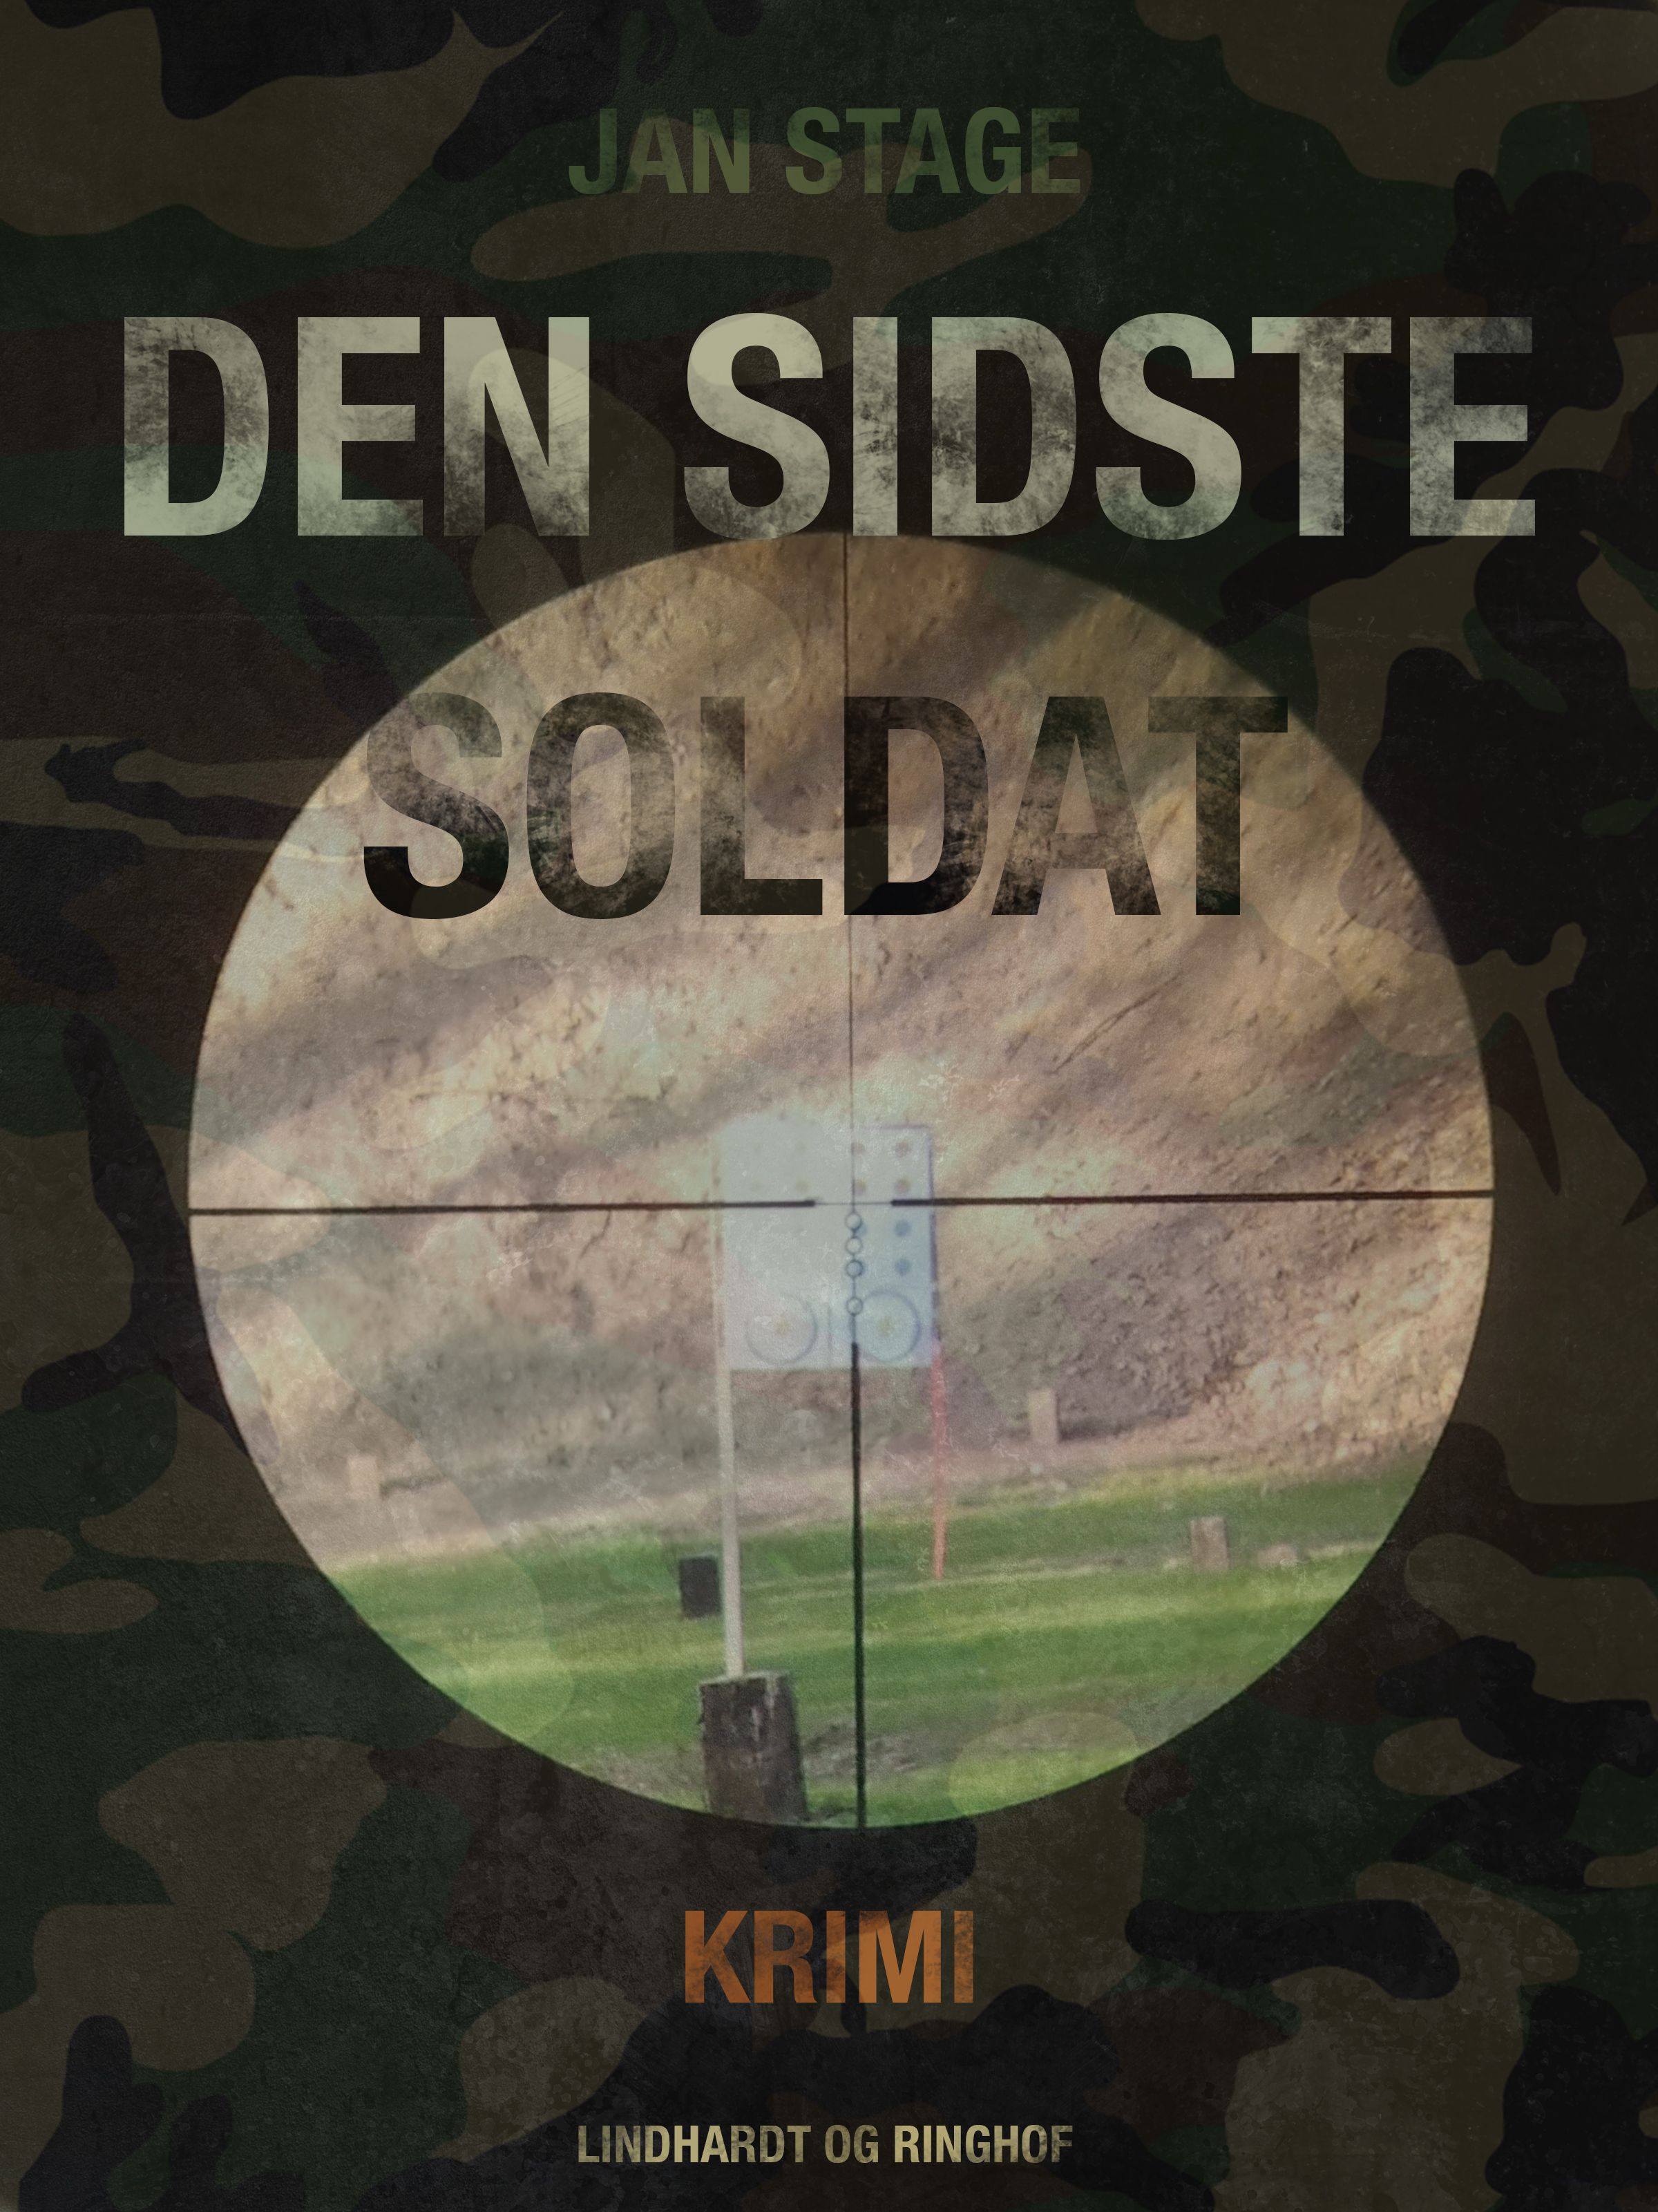 Den sidste soldat, ljudbok av Jan Stage